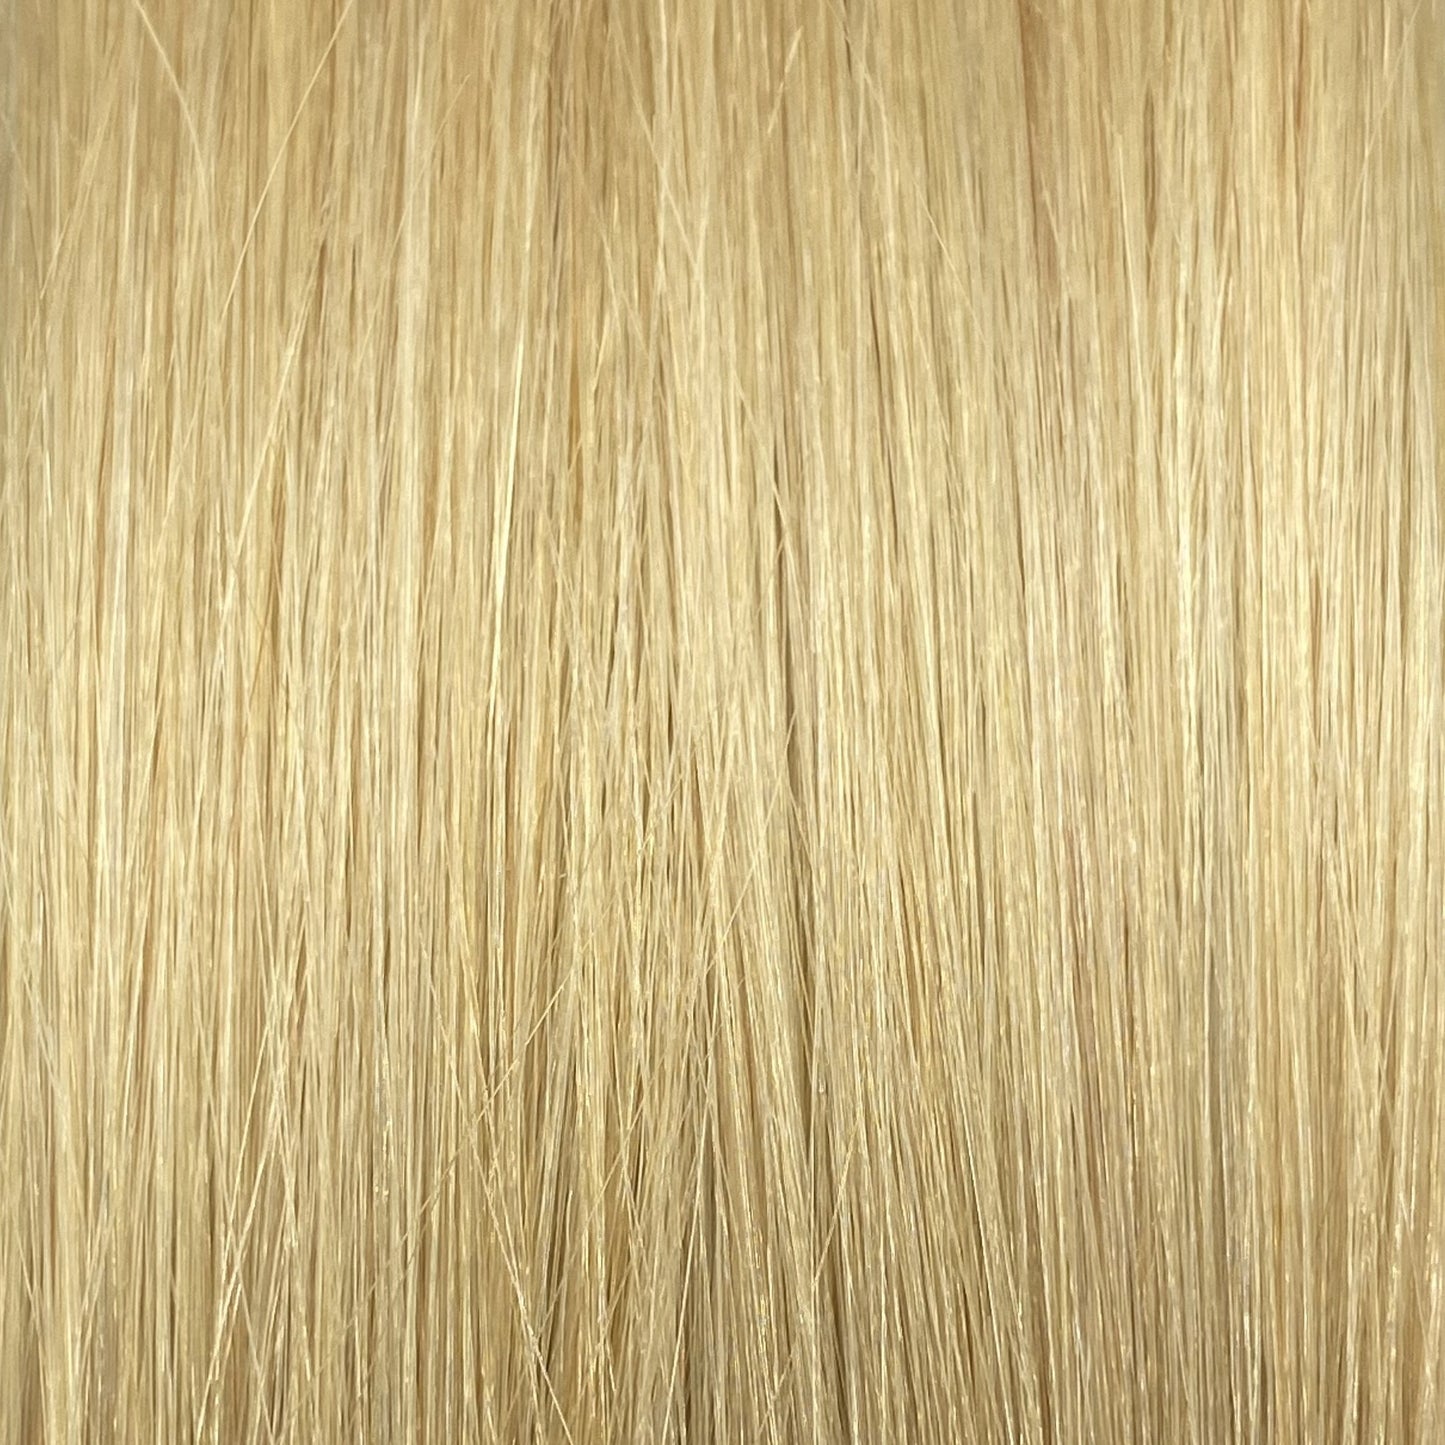 Fusion hair extensions #1001- 40cm/16 inches - Platinum Blonde Fusion Euro So Cap 